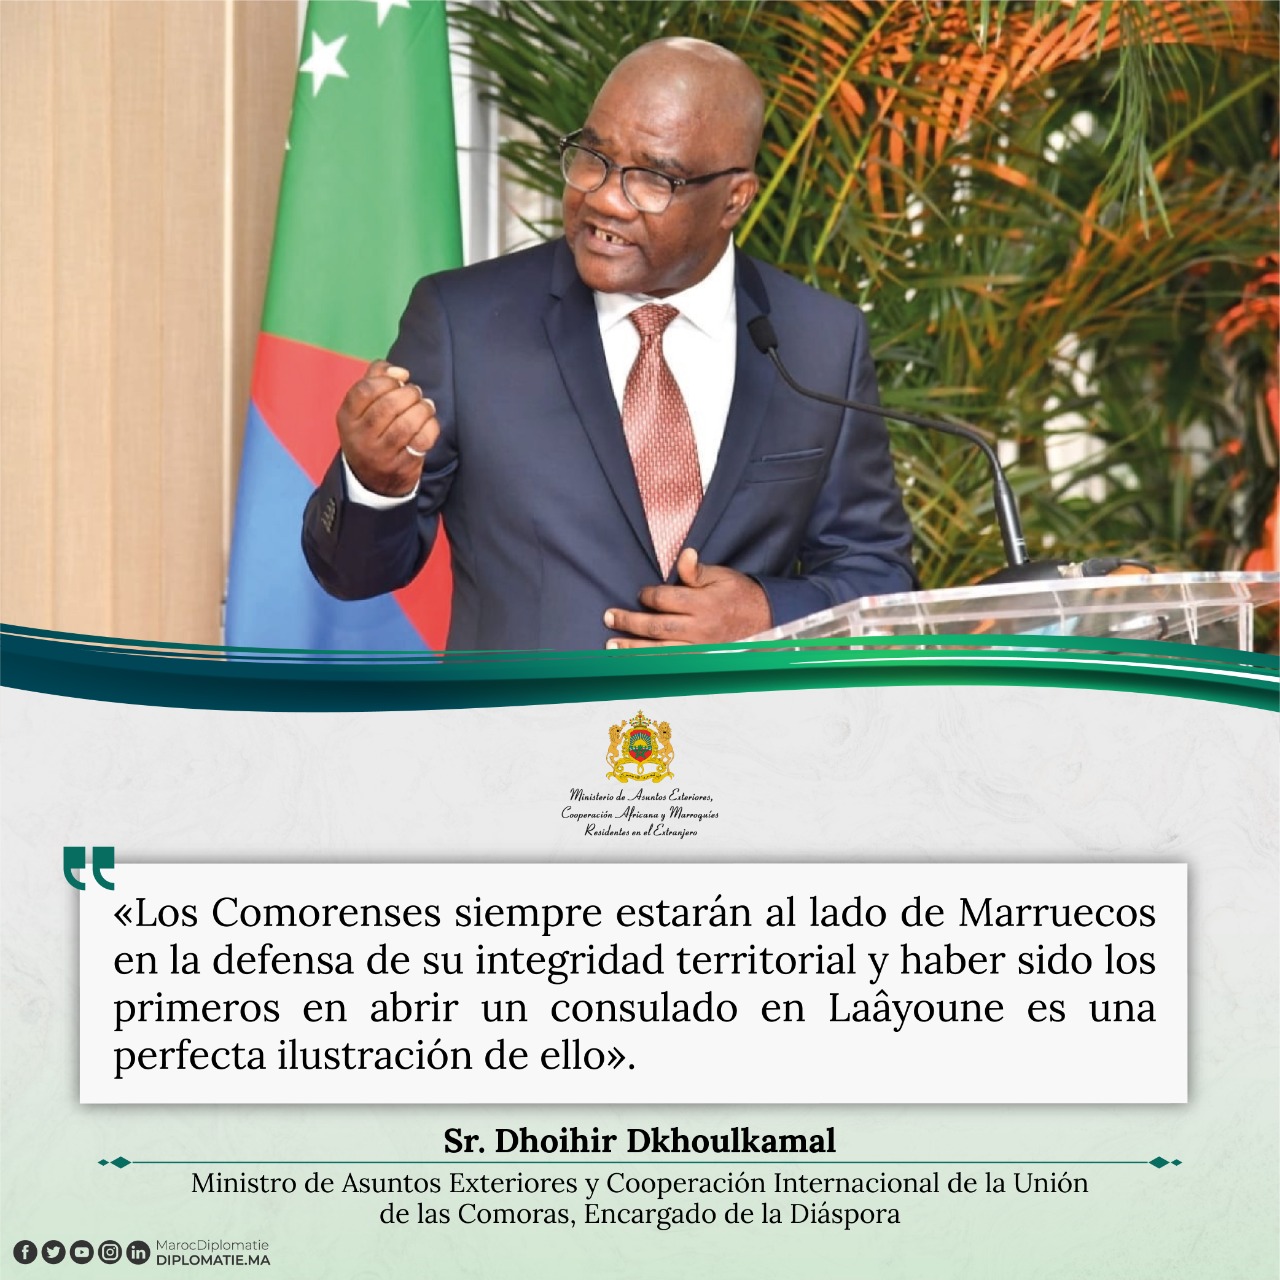 Ministro de Asuntos Exteriores y Cooperación Internacional de la Unión de las Comoras, Encargado de la Diáspora, Sr. Dhoihir Dkhoulkamal.